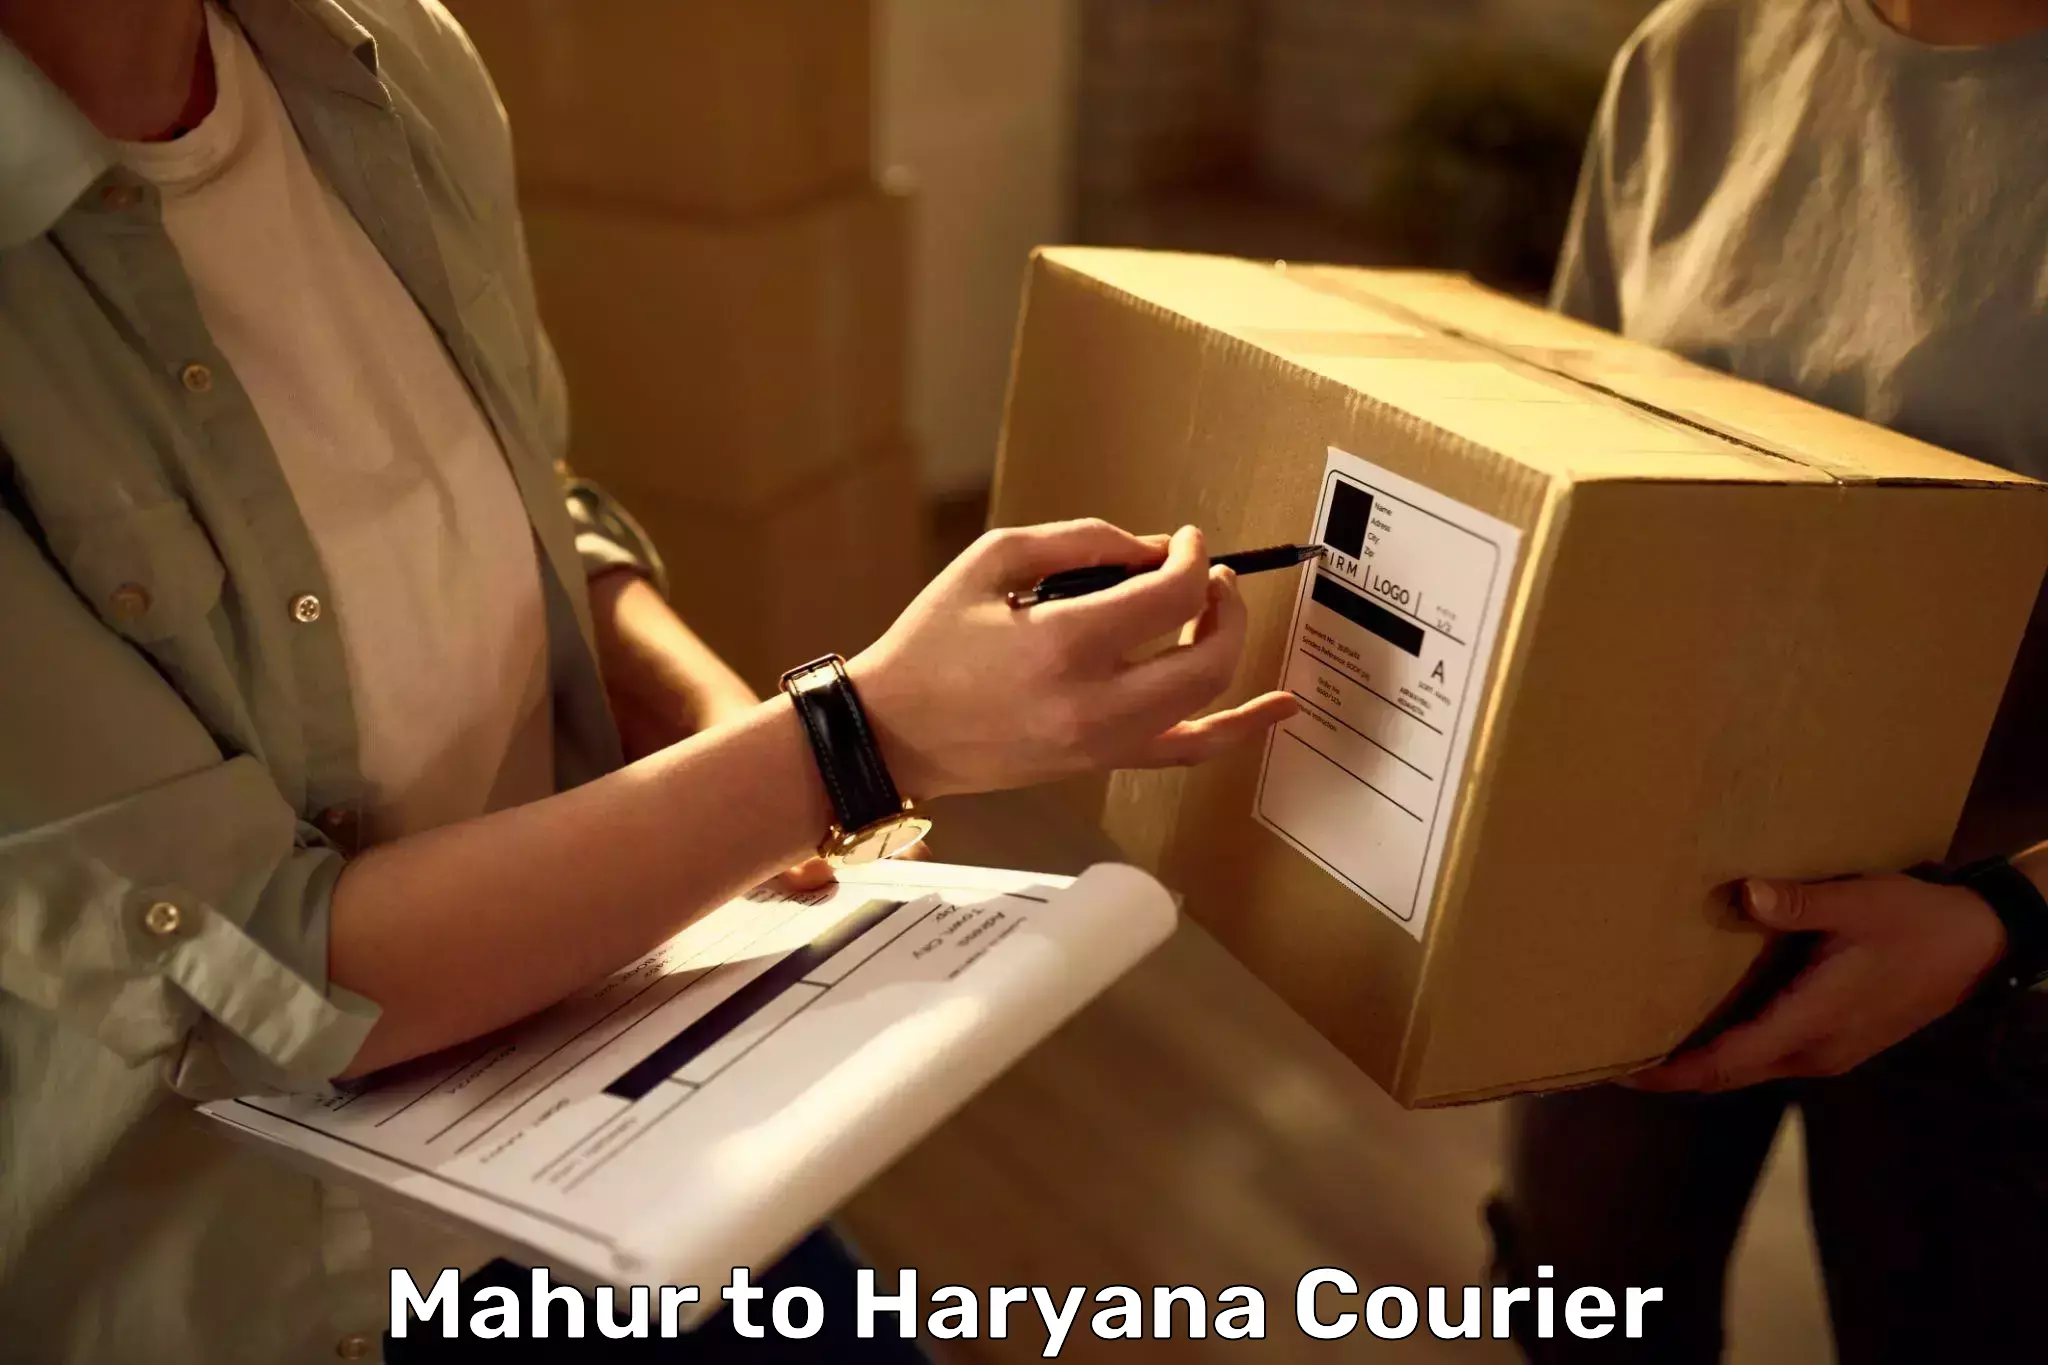 Door-to-door baggage service Mahur to Haryana